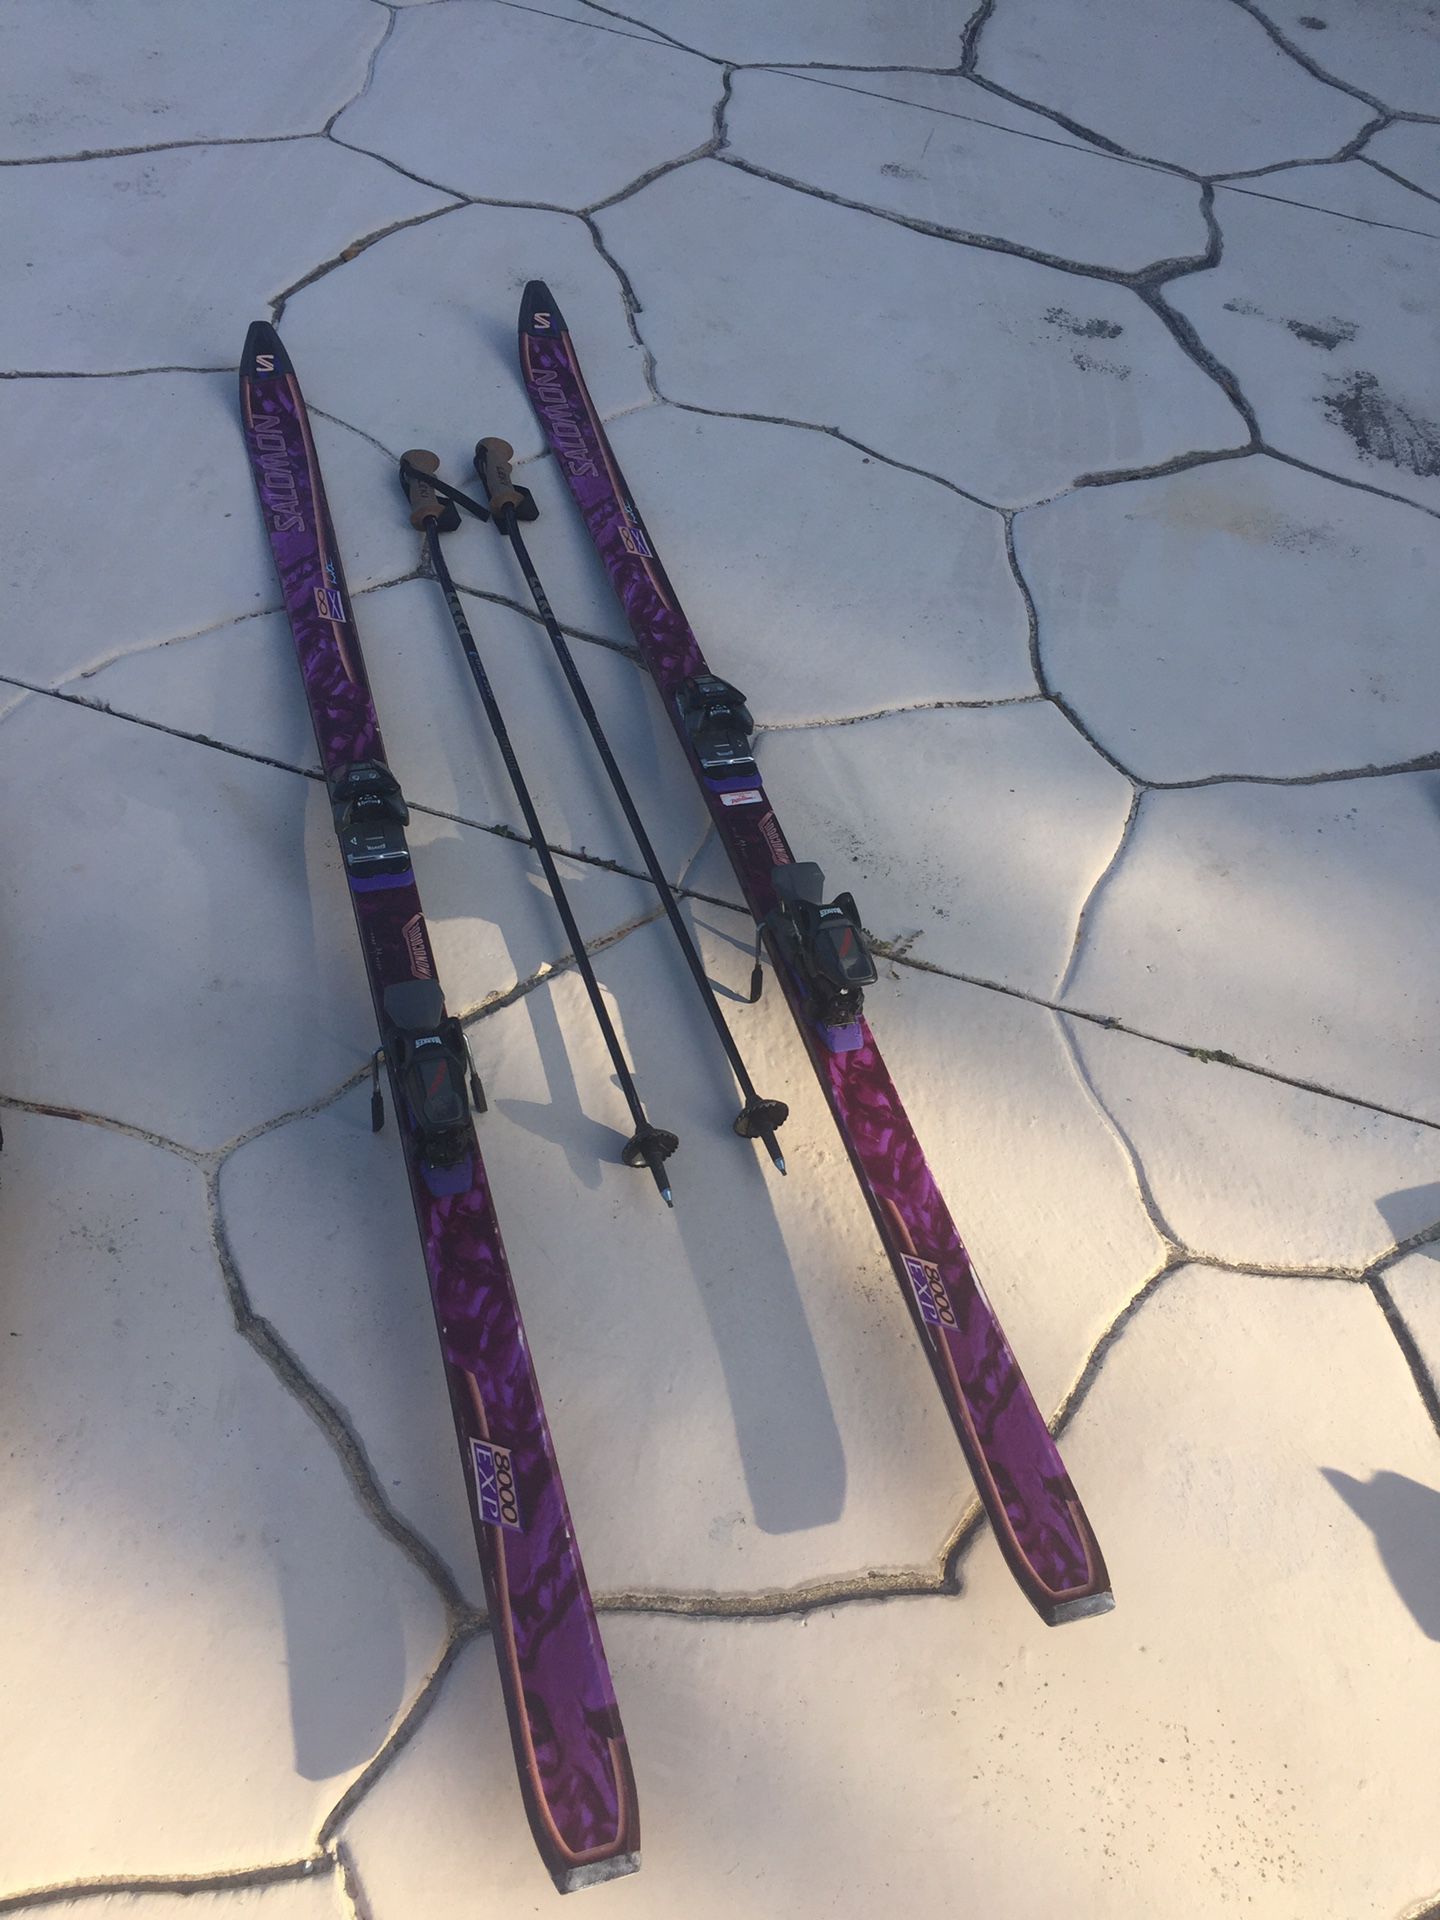 Salomon snow skis and poles